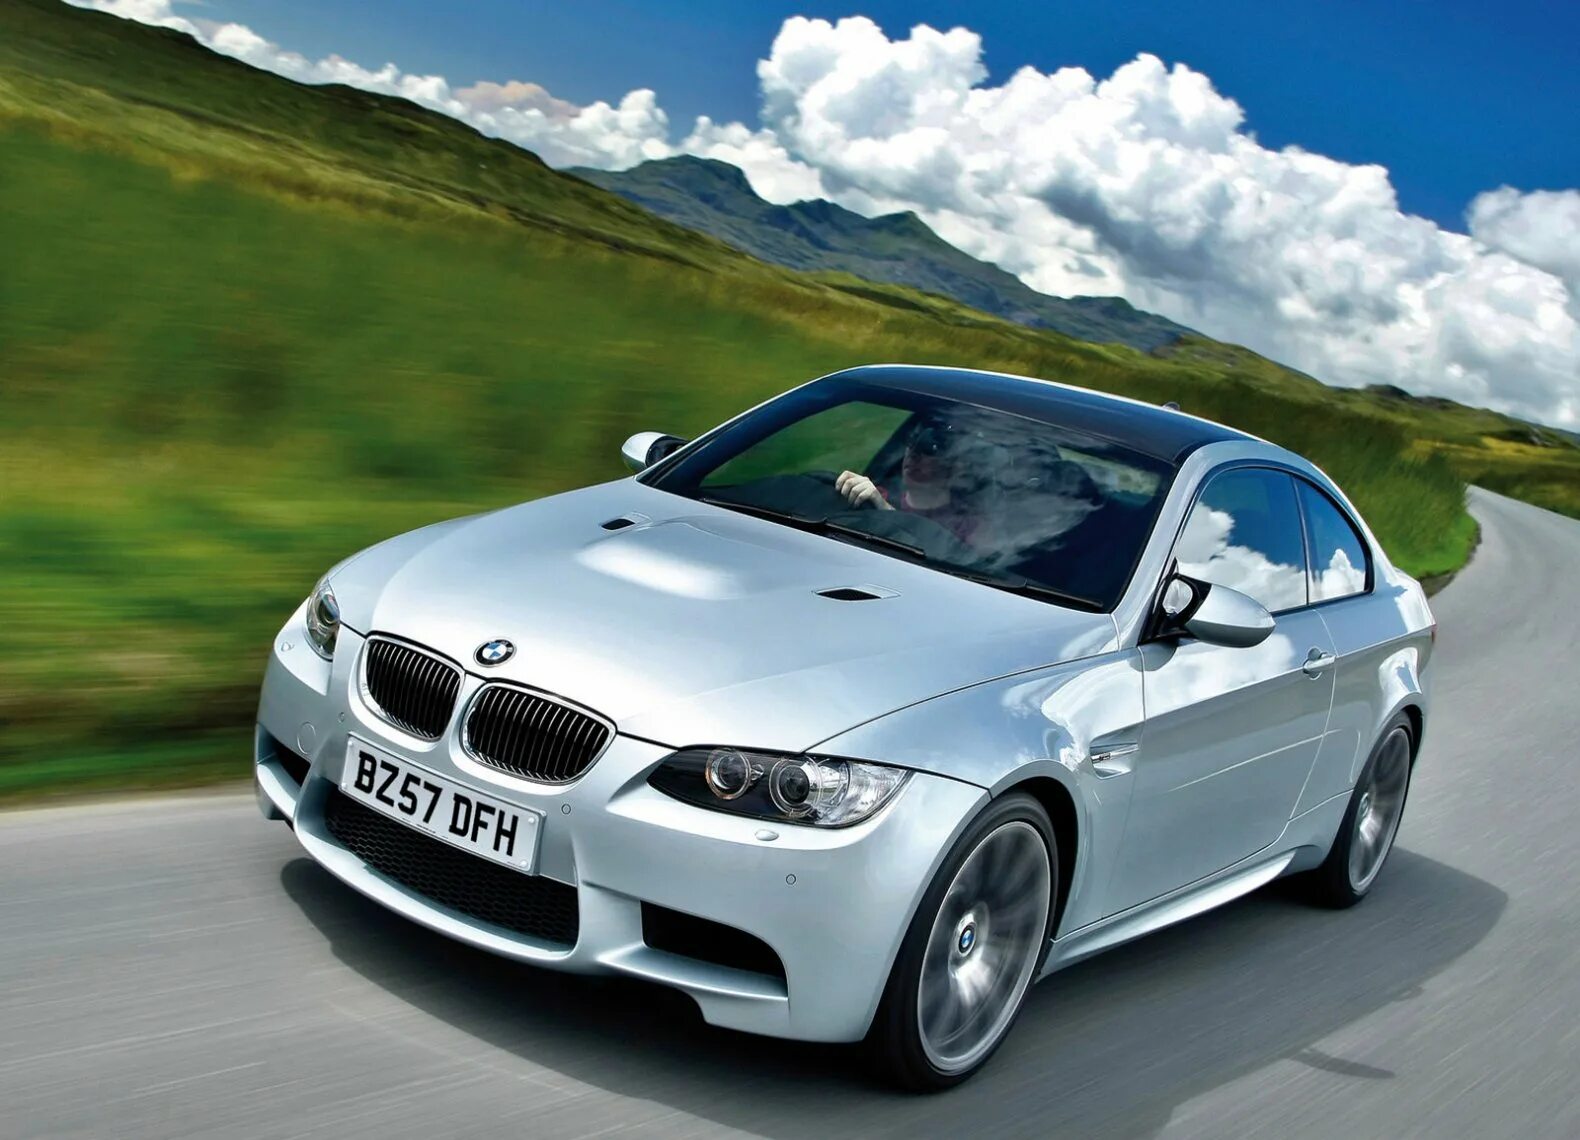 3 m ф ф. BMW m3 купе. BMW e92. М3 купе. BMW m3 e92 Coupe.